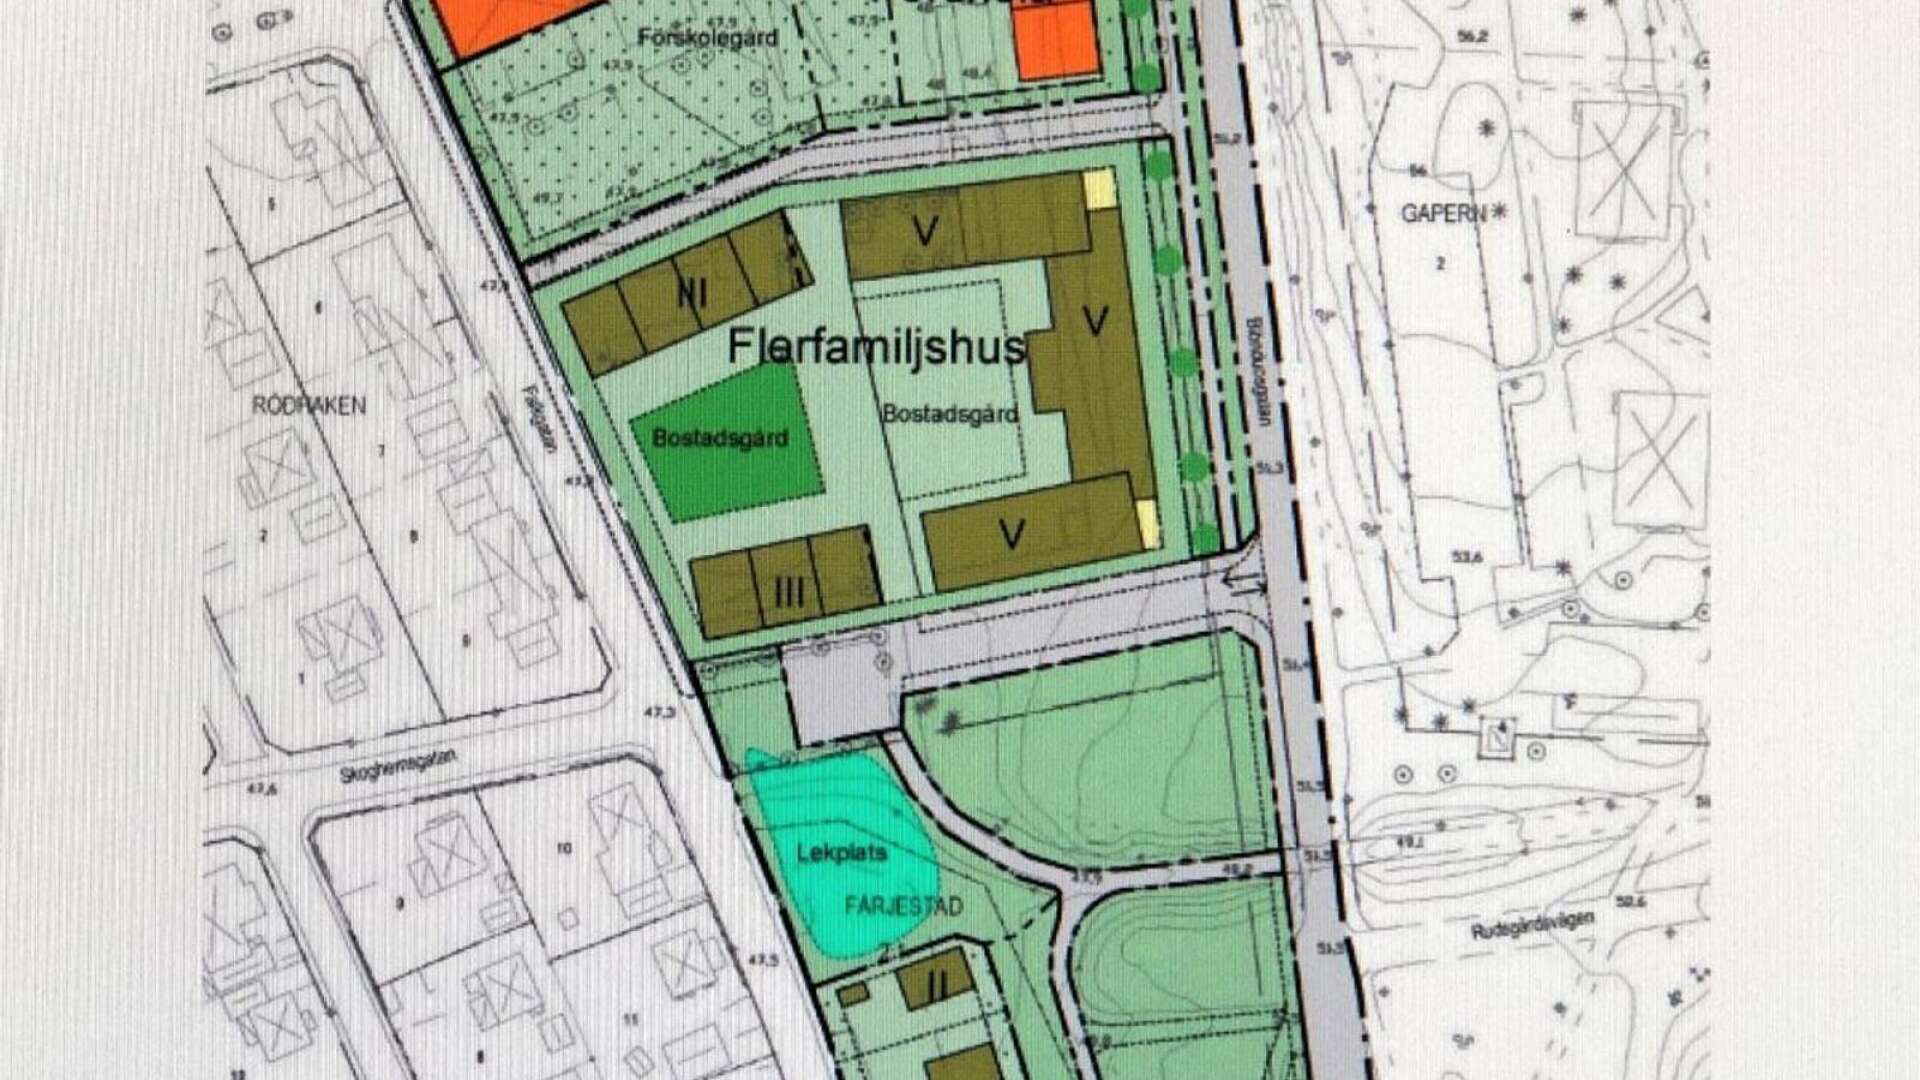 En ny förskola i två plan samt 140 nya bostäder i form av flerbostadshus och parhus planeras på Färjestad. Bostäderna placeras längst norrut närmast Färjestadsskolan. Längst söderut ska parhusen byggas.